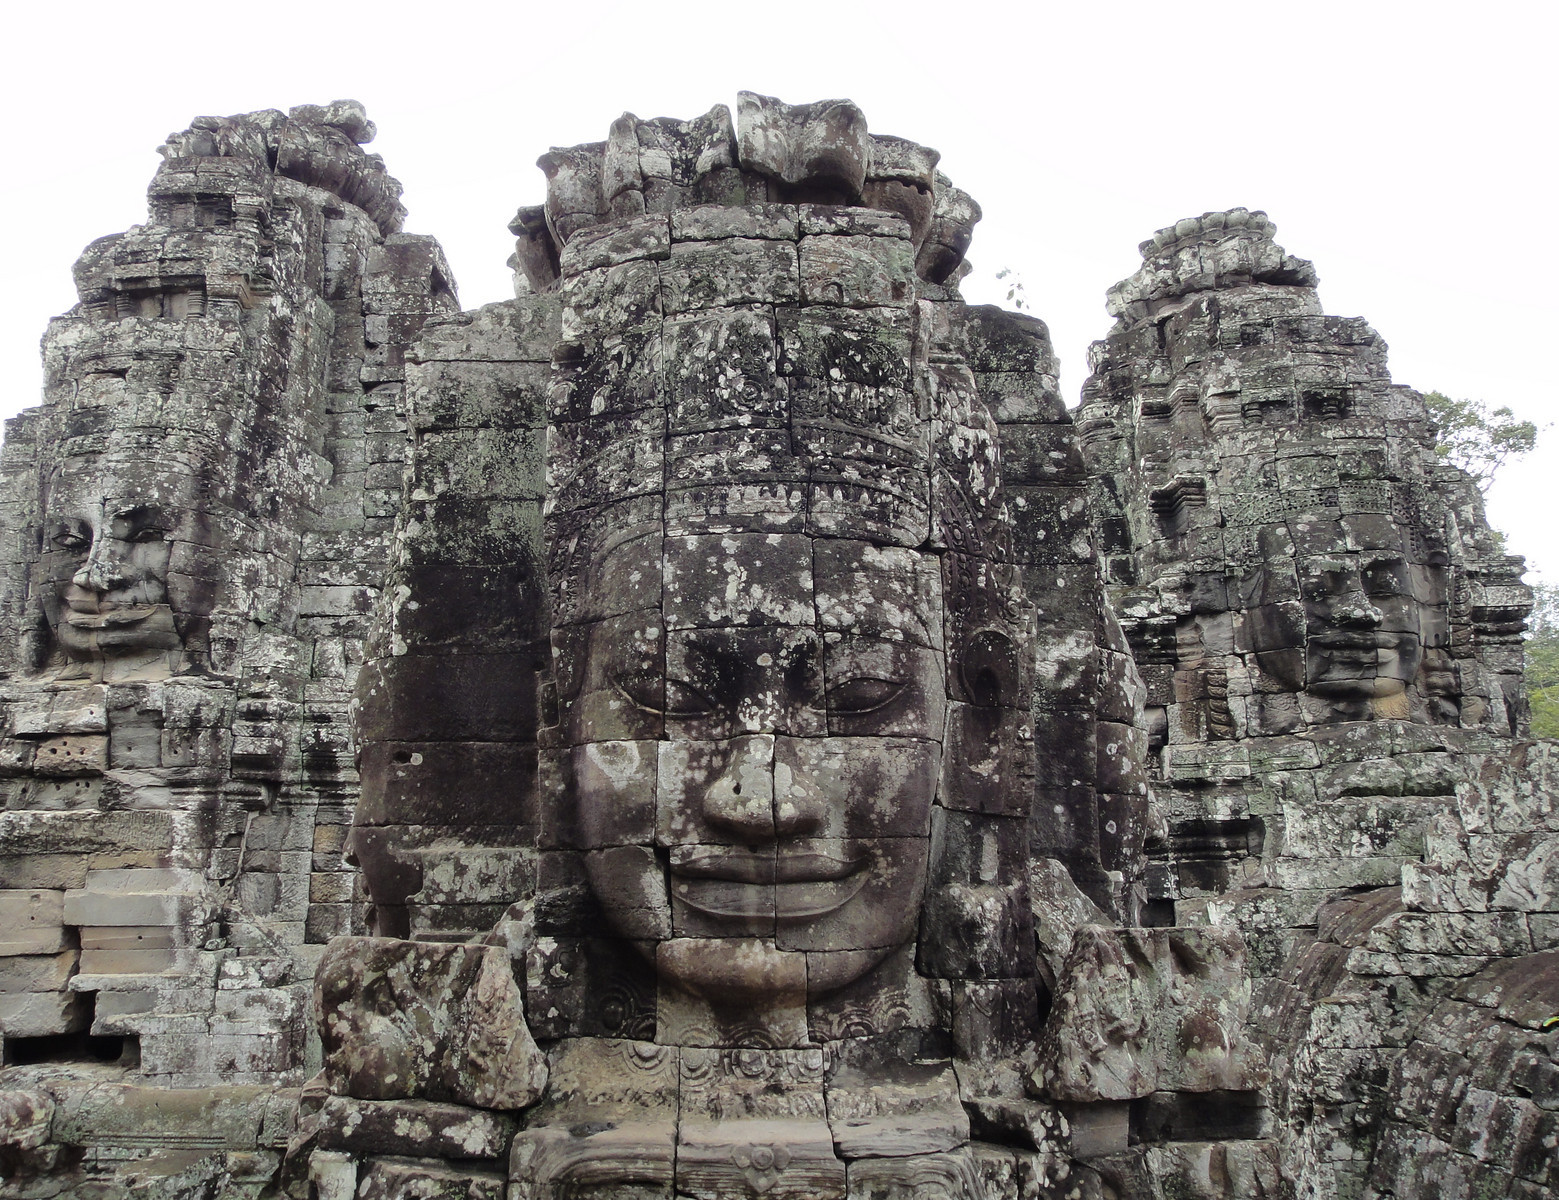 Faces of Bayon (Angkor Wat, Cambodia)